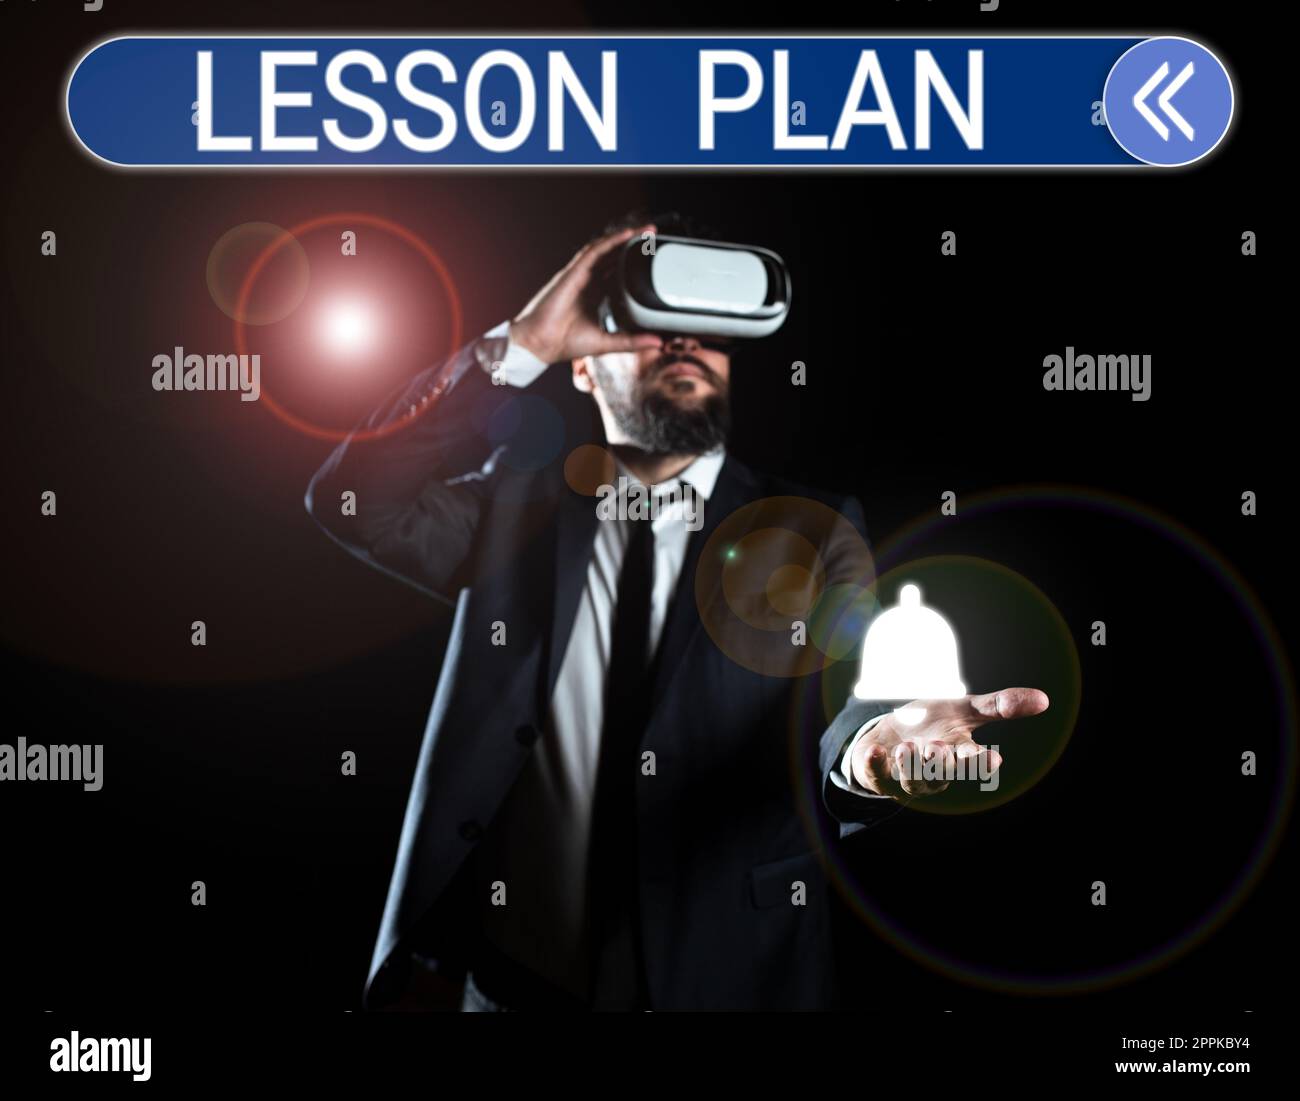 Inspiration zeigt Zeichen Lesson Plan. Internet-Konzept eine detaillierte Beschreibung des Unterrichts durch einen Lehrer Stockfoto